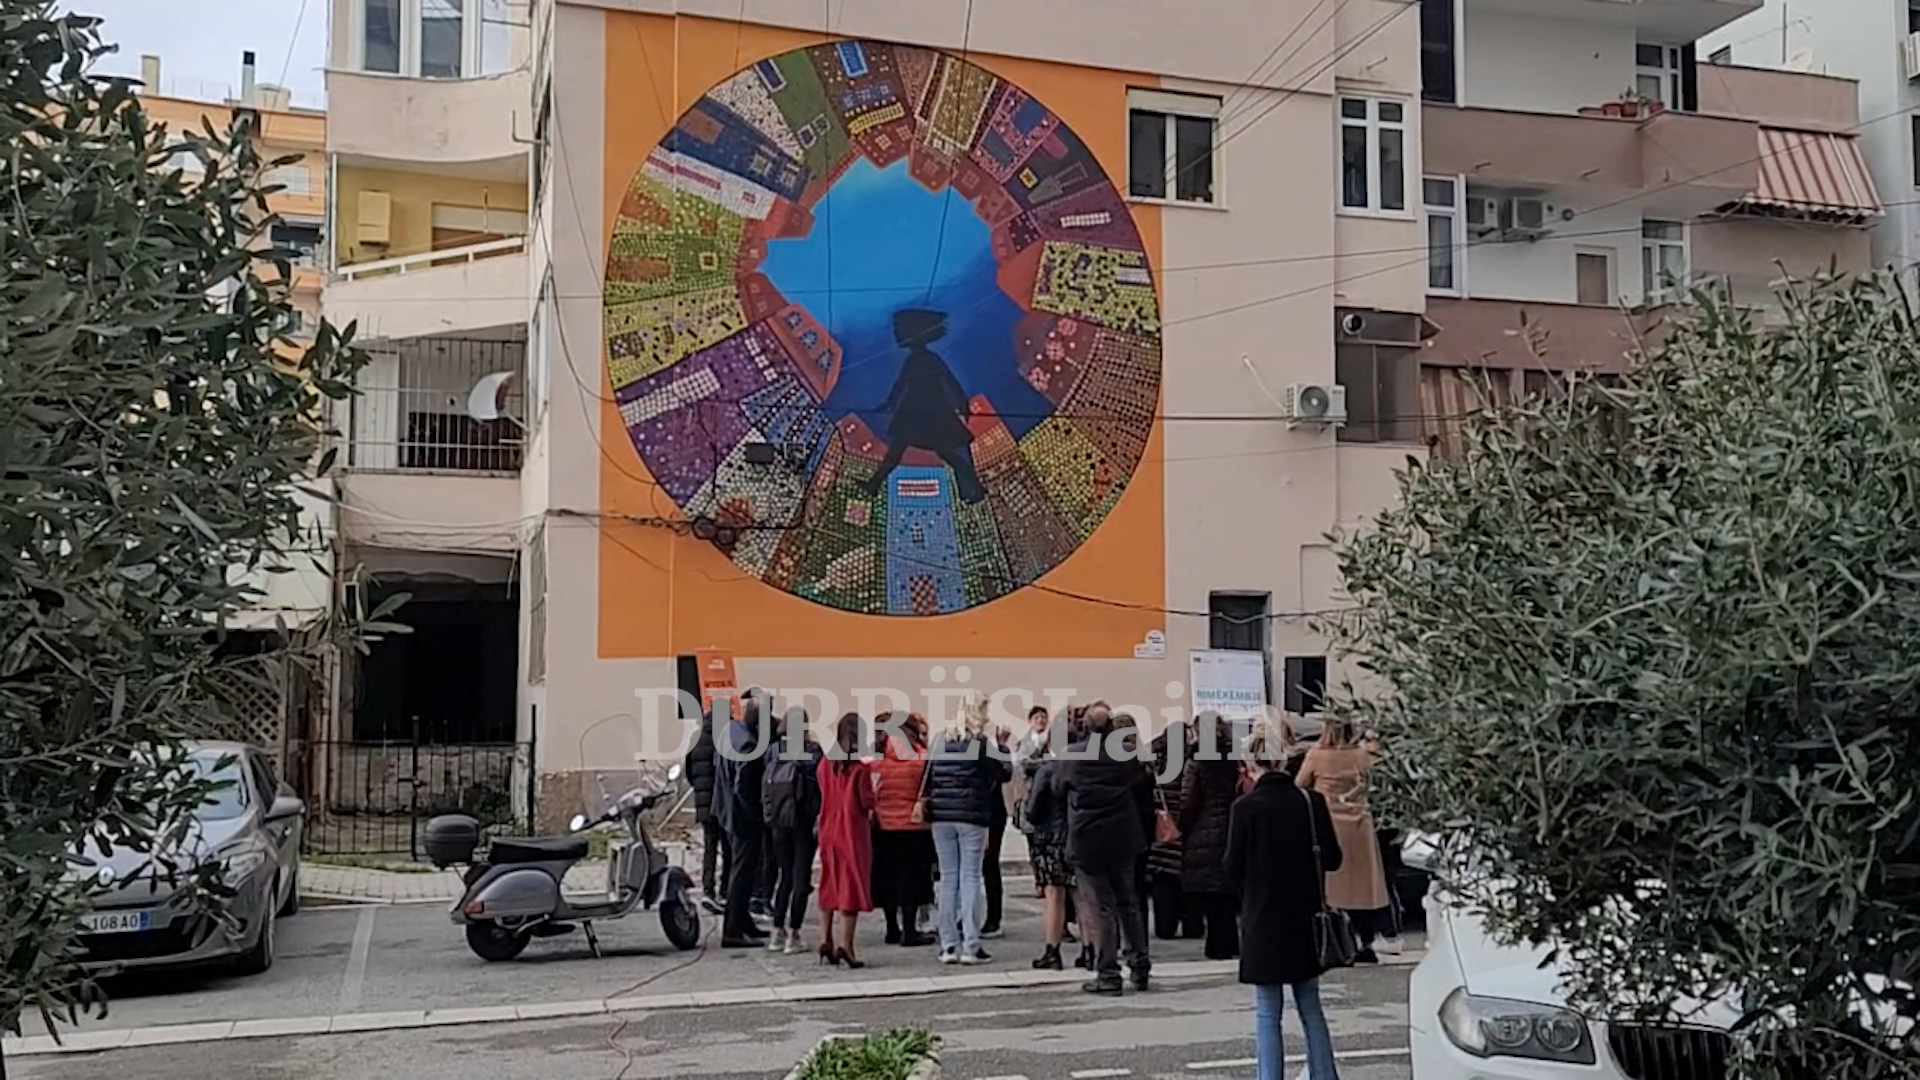 Durrësit i shtohet një tjetër murale, synon sensibilizimin e qytetarëve për fenomenin e dhunës me bazë gjinore (VIDEO)